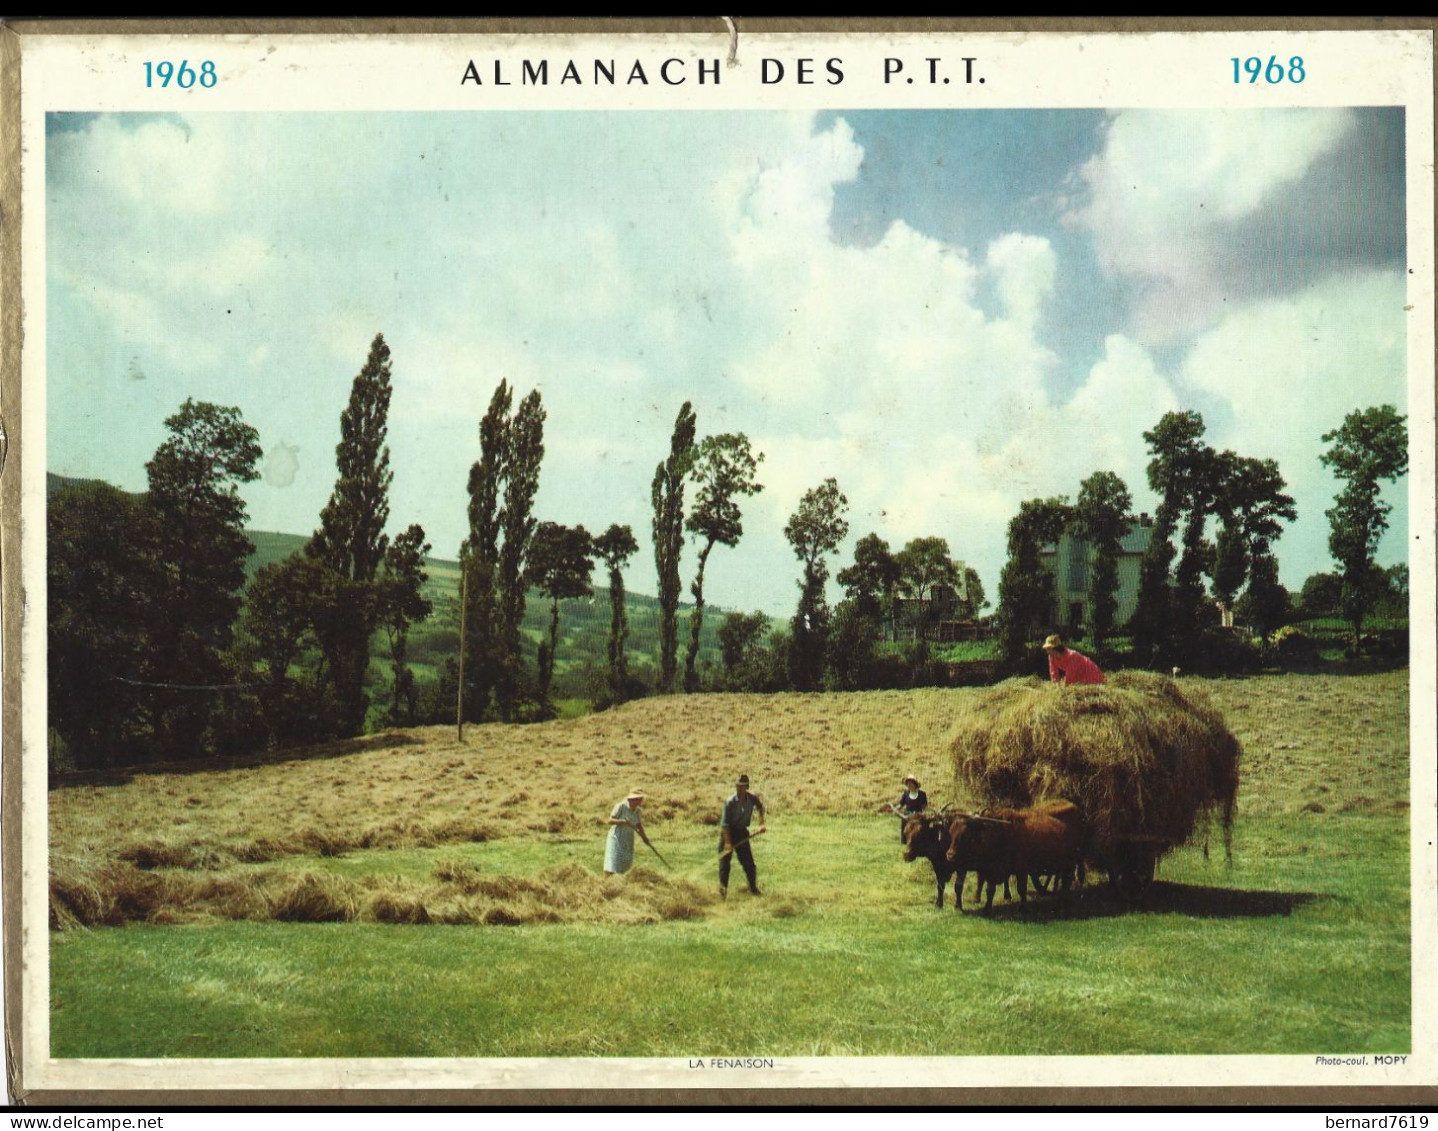 Almanach  Calendrier  P.T.T  -  La Poste -  1968 - La Fenaison - Groot Formaat: 1961-70